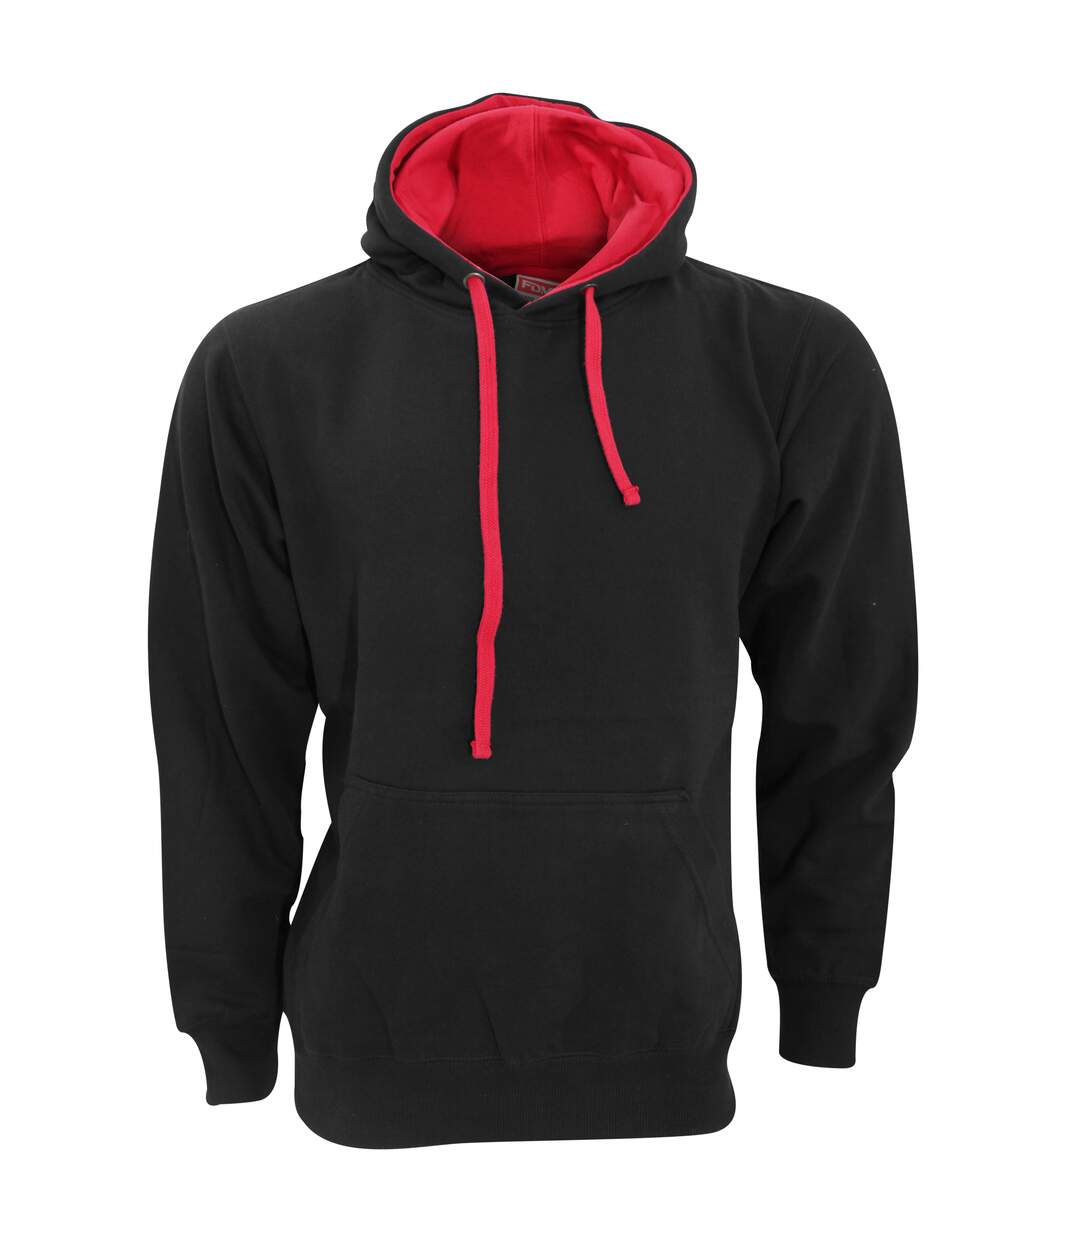 FDM Unisex Contrast Hooded Sweatshirt / Hoodie (300 GSM) (Black/Fire Red)